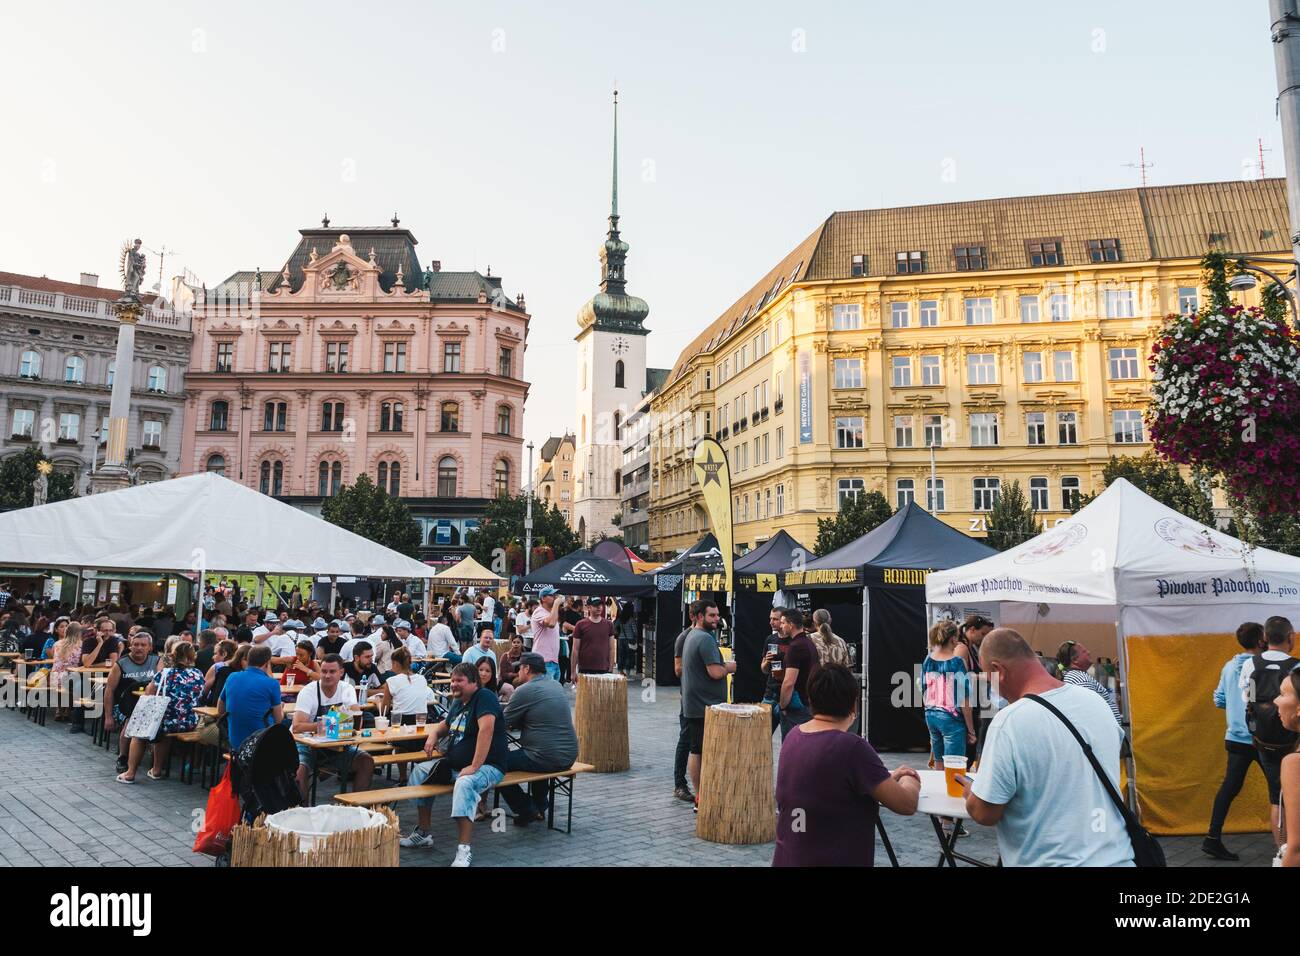 Brno, République tchèque - septembre 12 2020 : Festival Pivni de la bière artisanale en Moravie avec les gens et les tentes. Banque D'Images